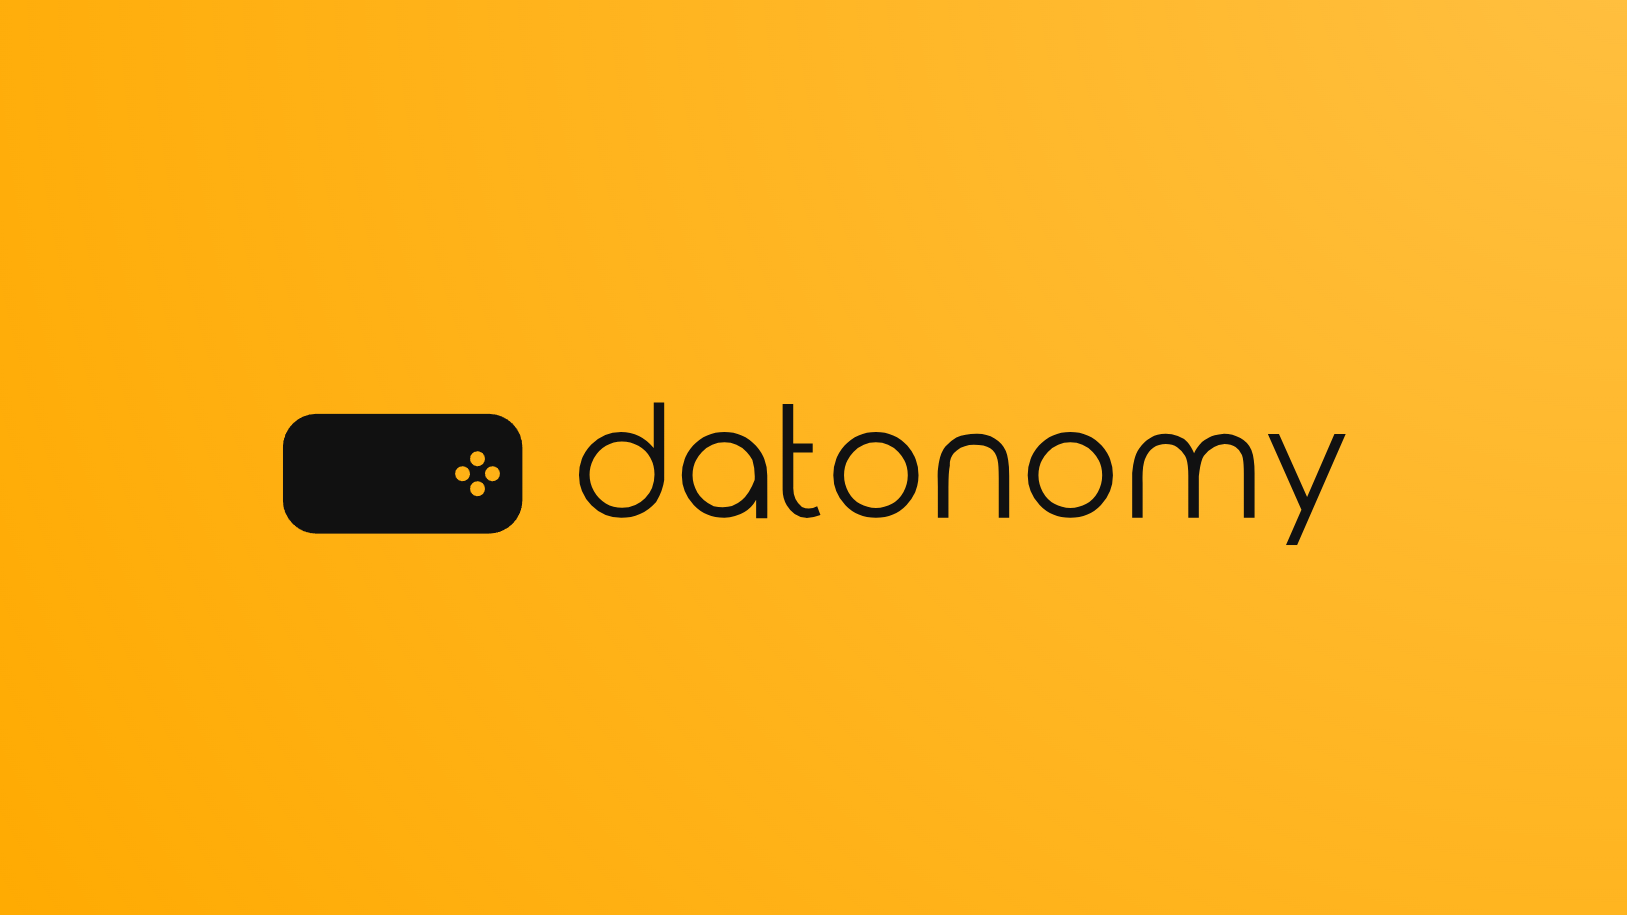 Datonomy